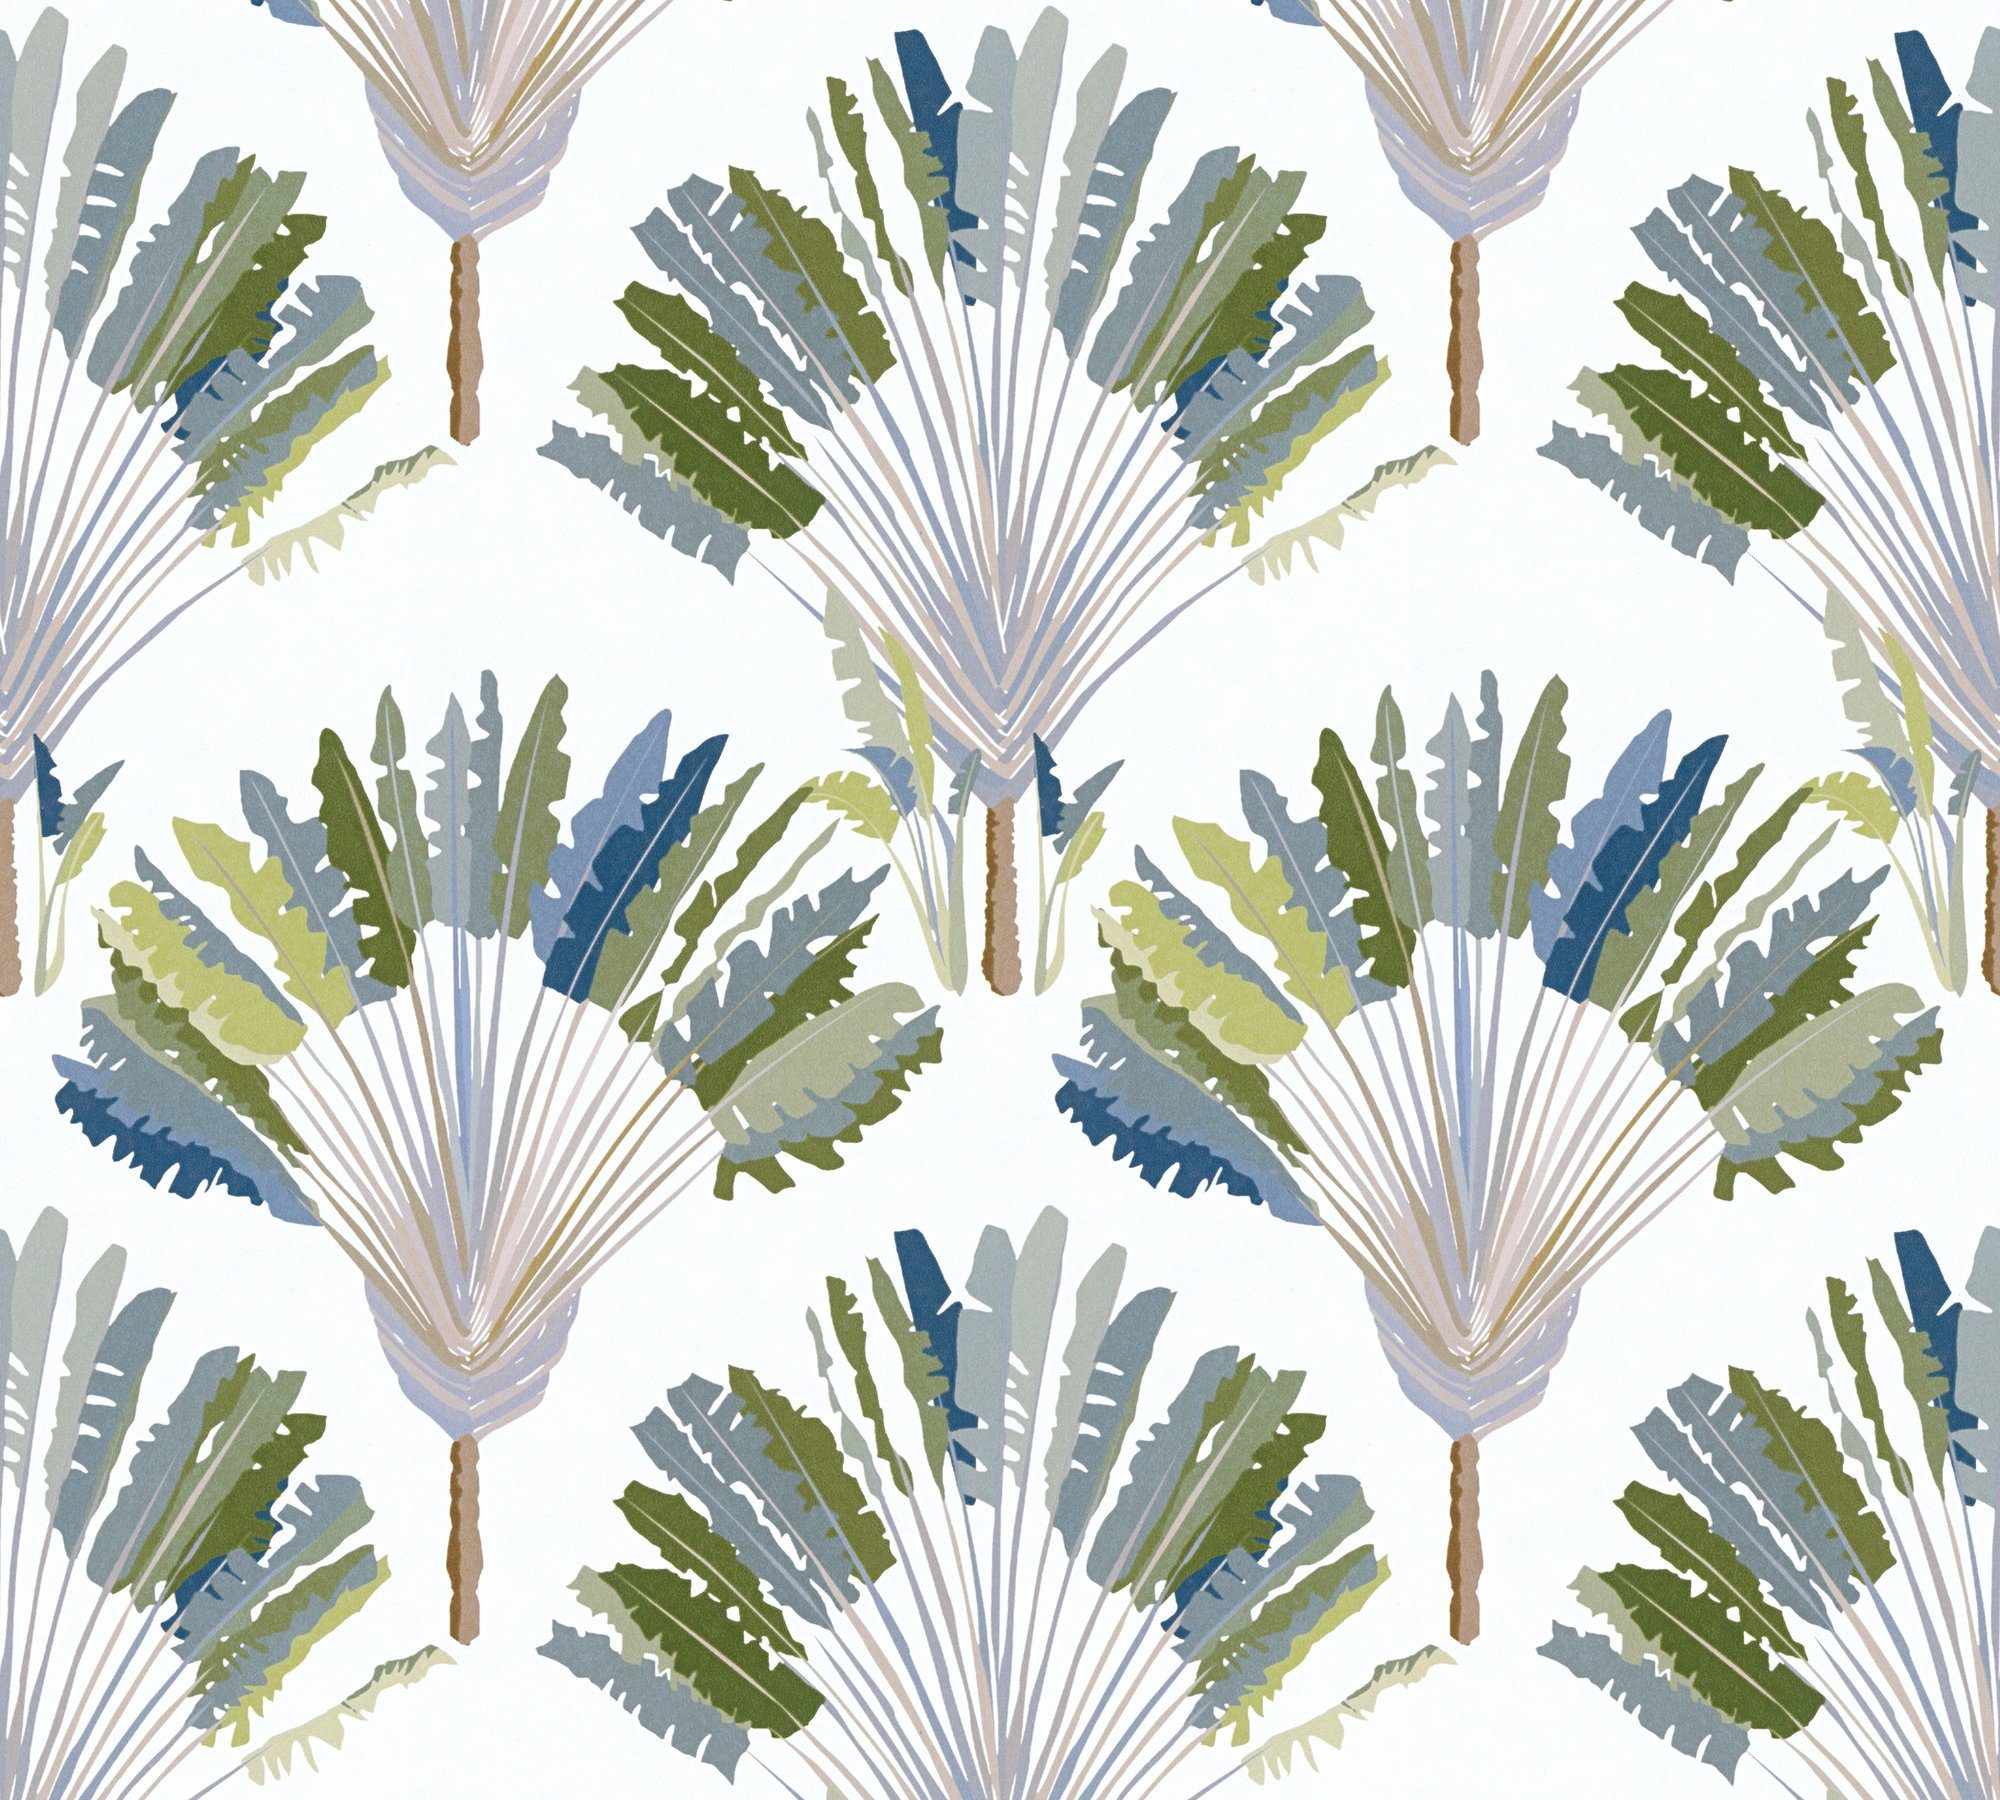 Federn grün/weiß/blau Jungle Architects Dschungel Paper Chic, Vliestapete Tapete botanisch, Palmentapete floral, glatt, tropisch,